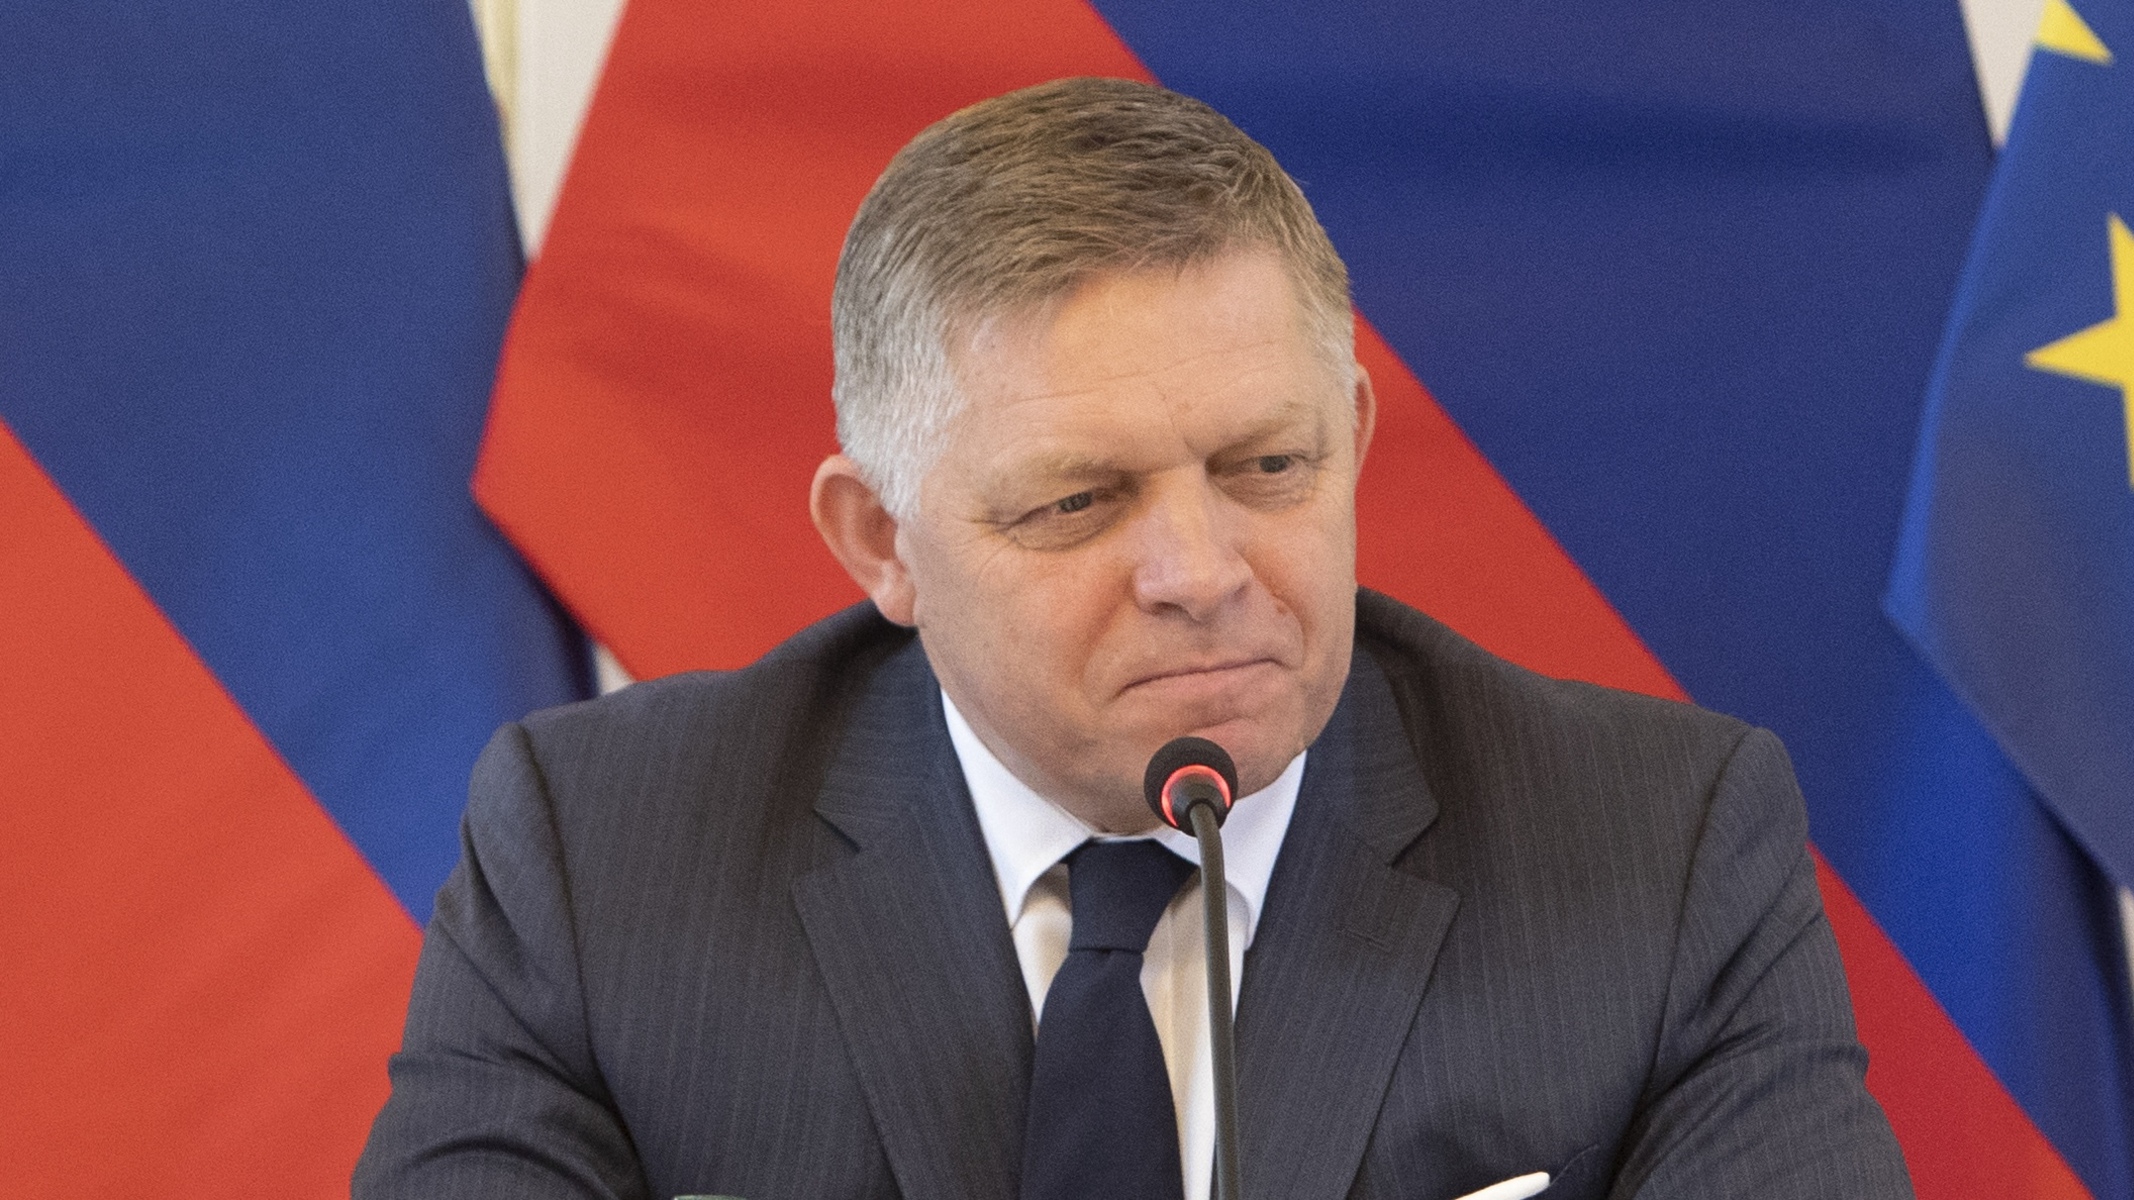 Европейские политики осудили покушение на премьера Словакии